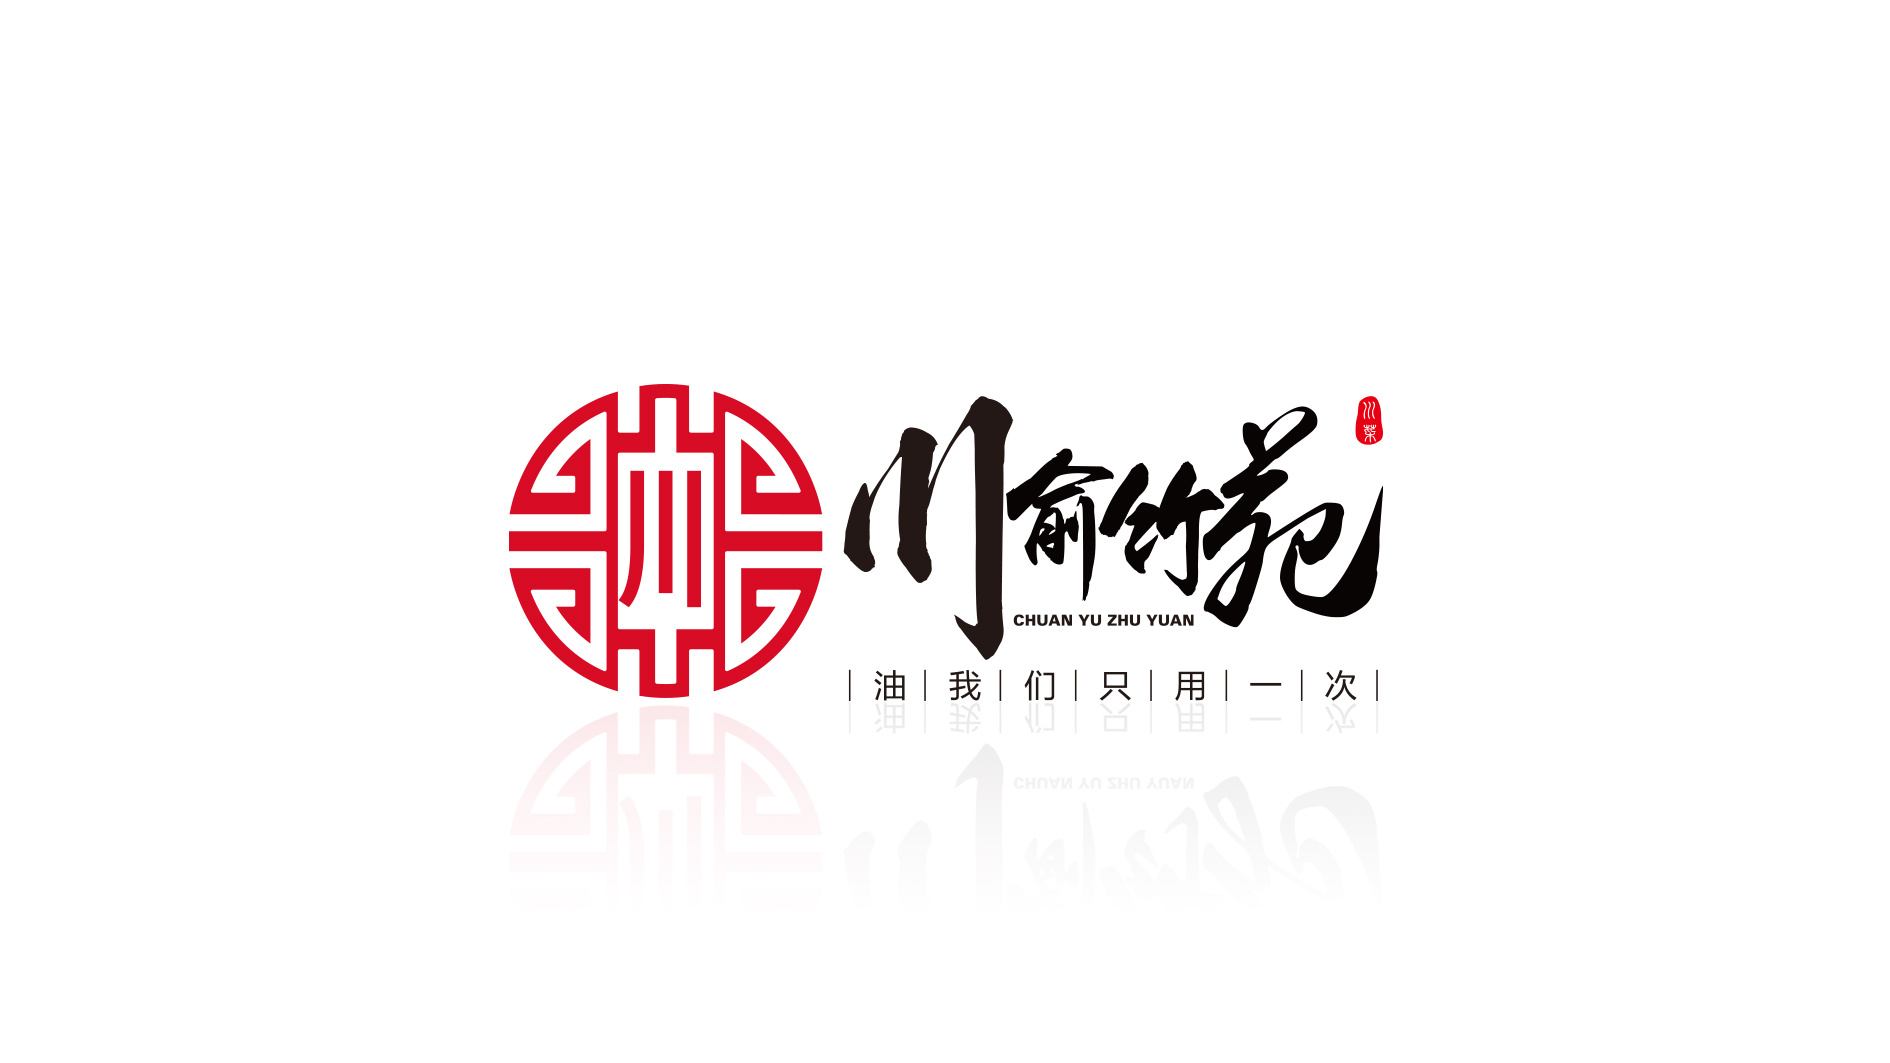 渝小馆川菜馆字体商标设计LOGO设计 - LOGO123